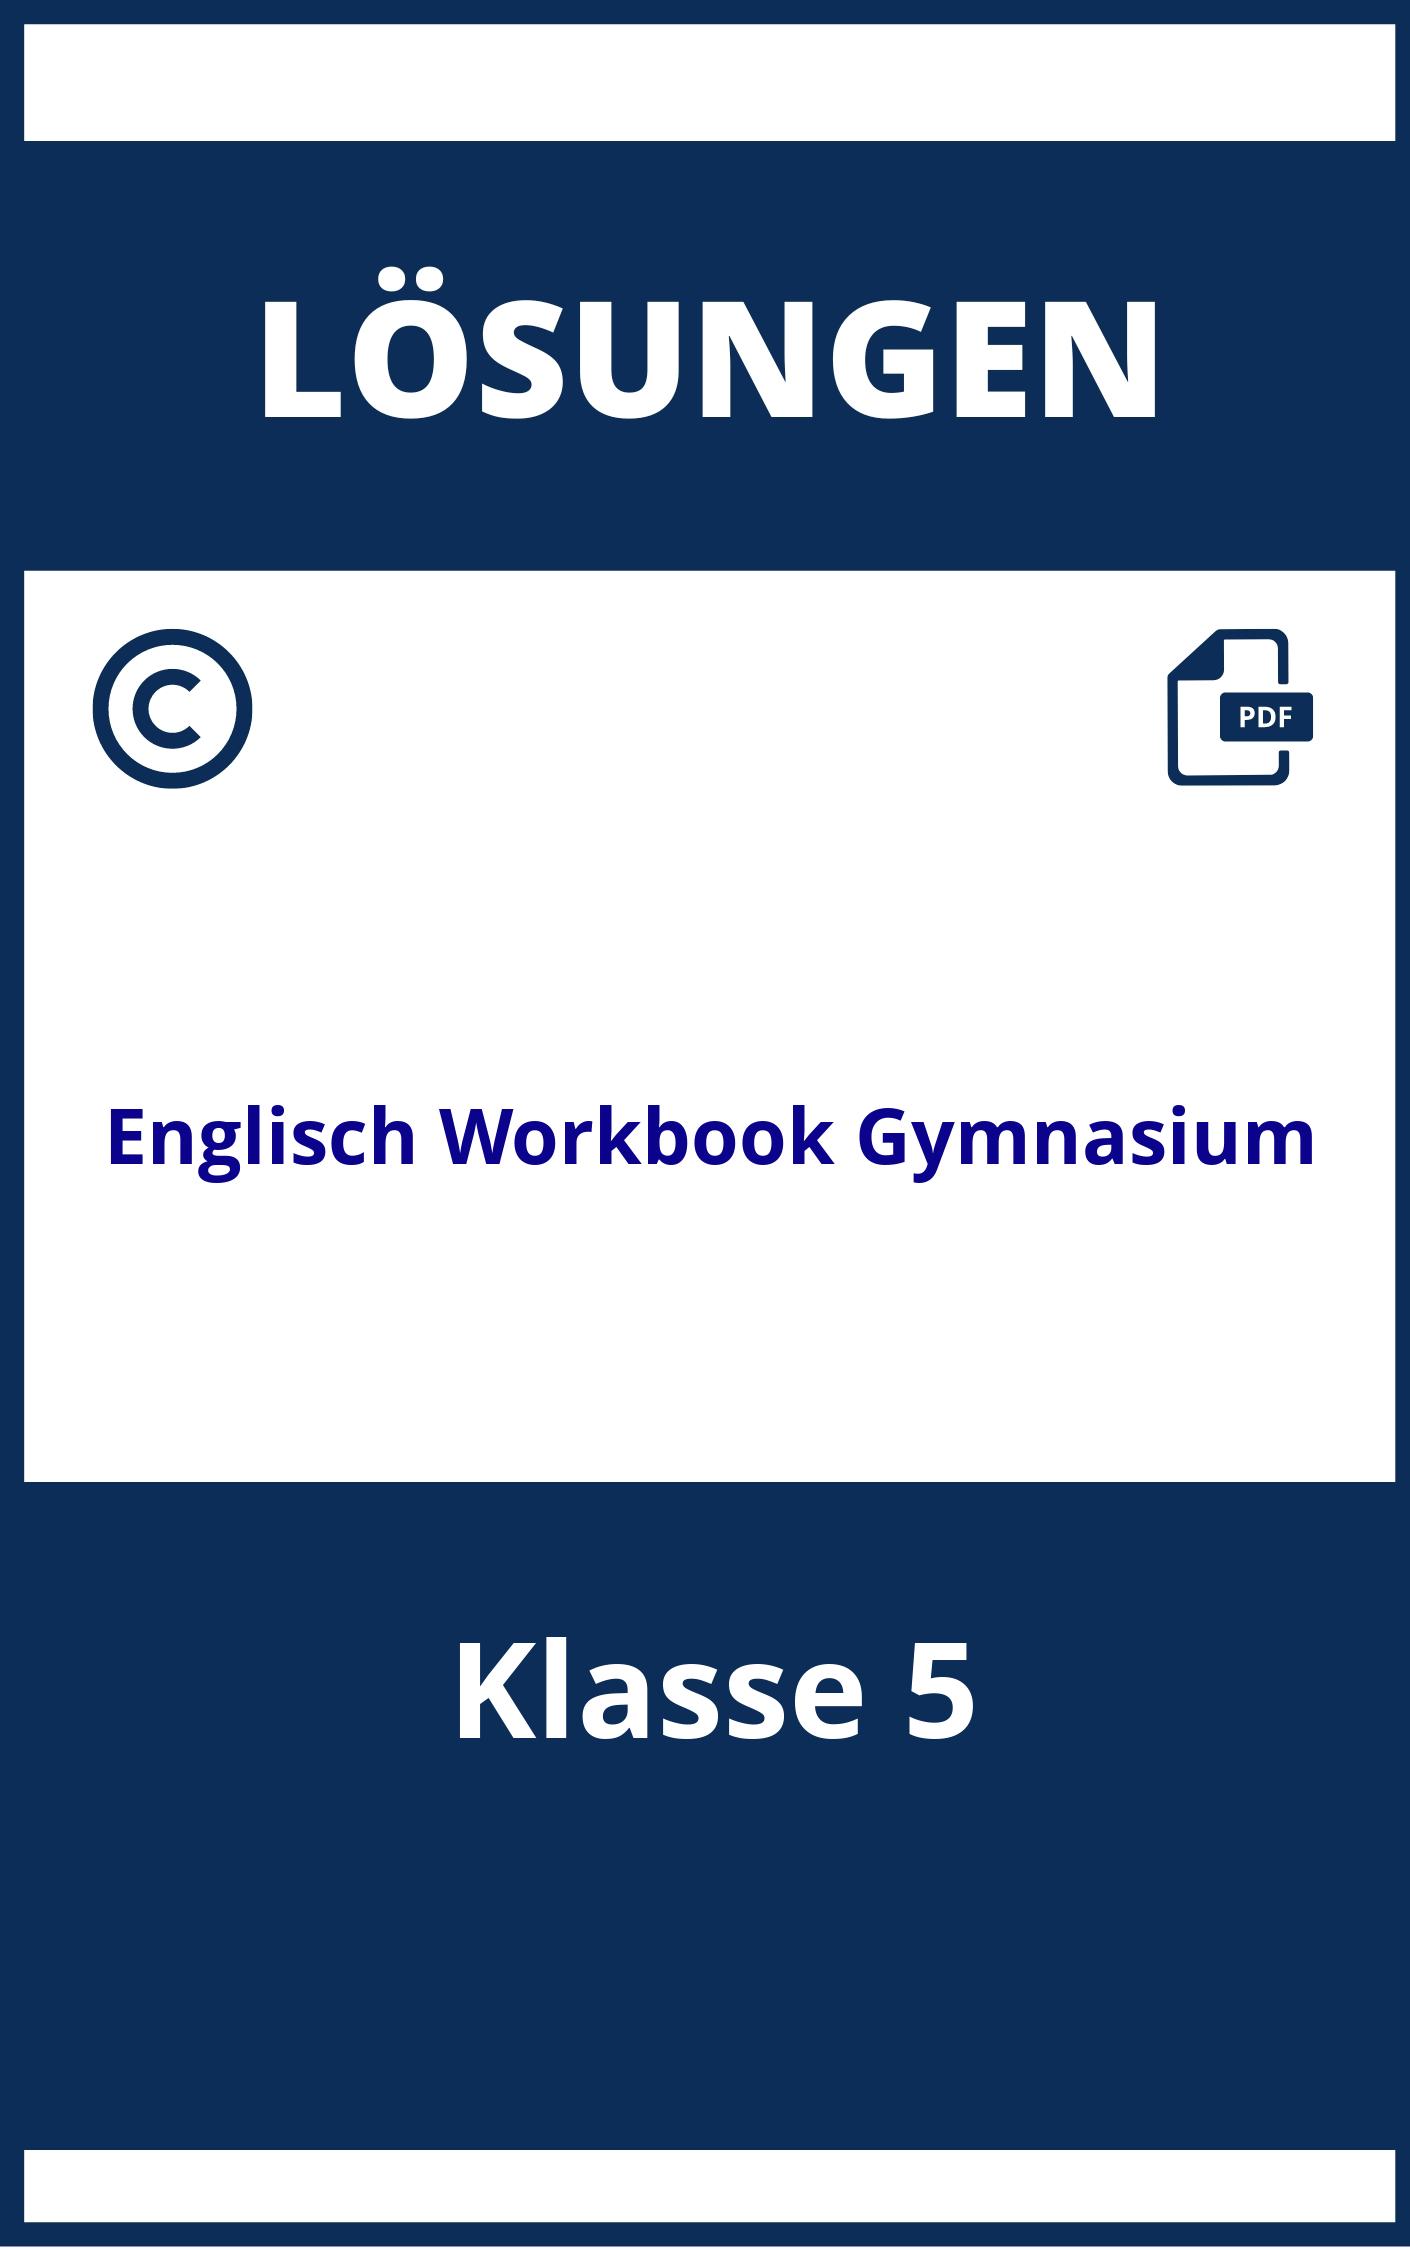 Englisch Workbook Lösungen Klasse 5 Gymnasium